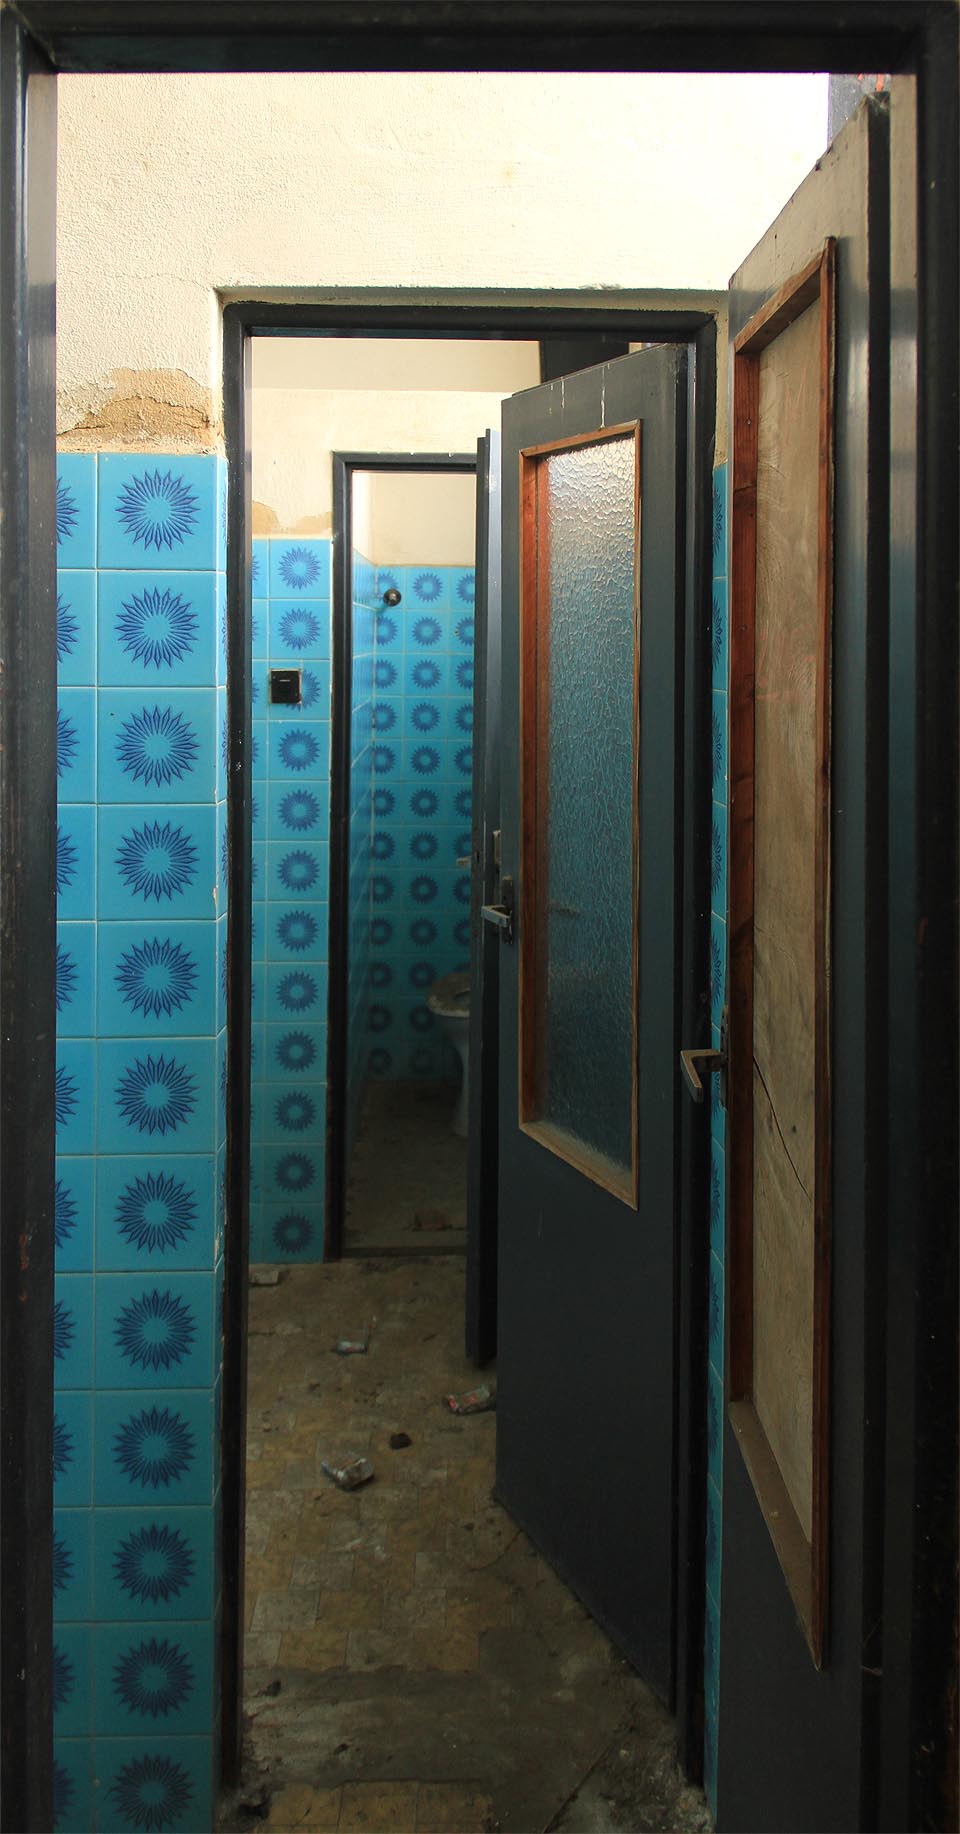 Nedostatek modré barvy je v budově řešen intenzivní září azurových kachliček na toaletách.